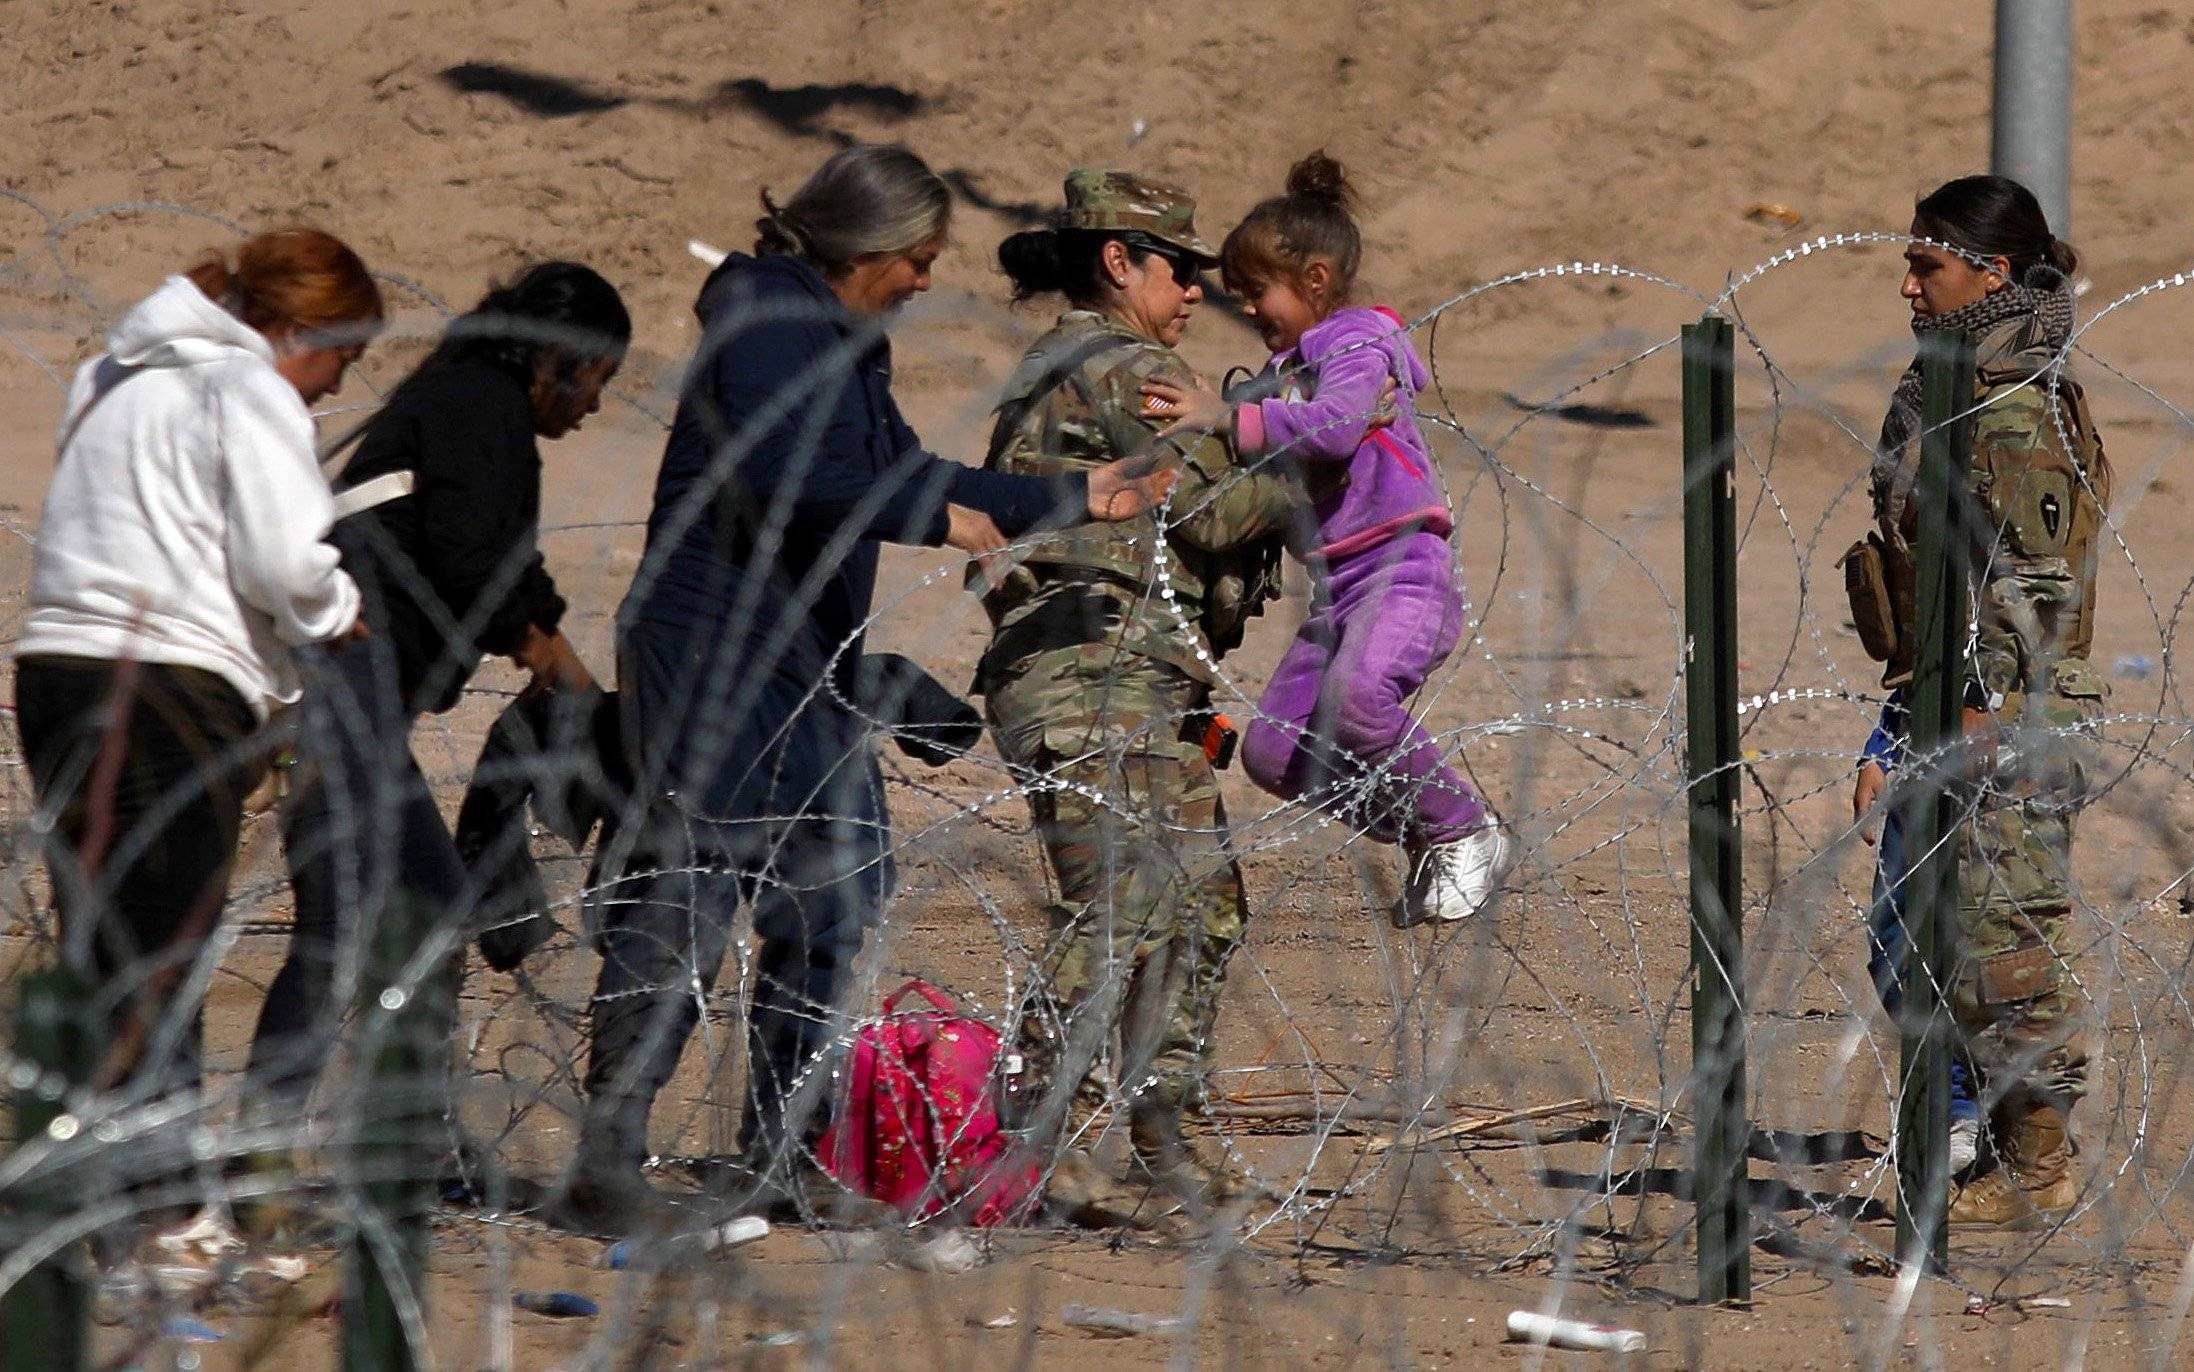 Strażniczka graniczna trzyma dziecko, na ziemi leży plecak, na pierwszym planie drut kolczasty, wokół nich podłoże z piasku